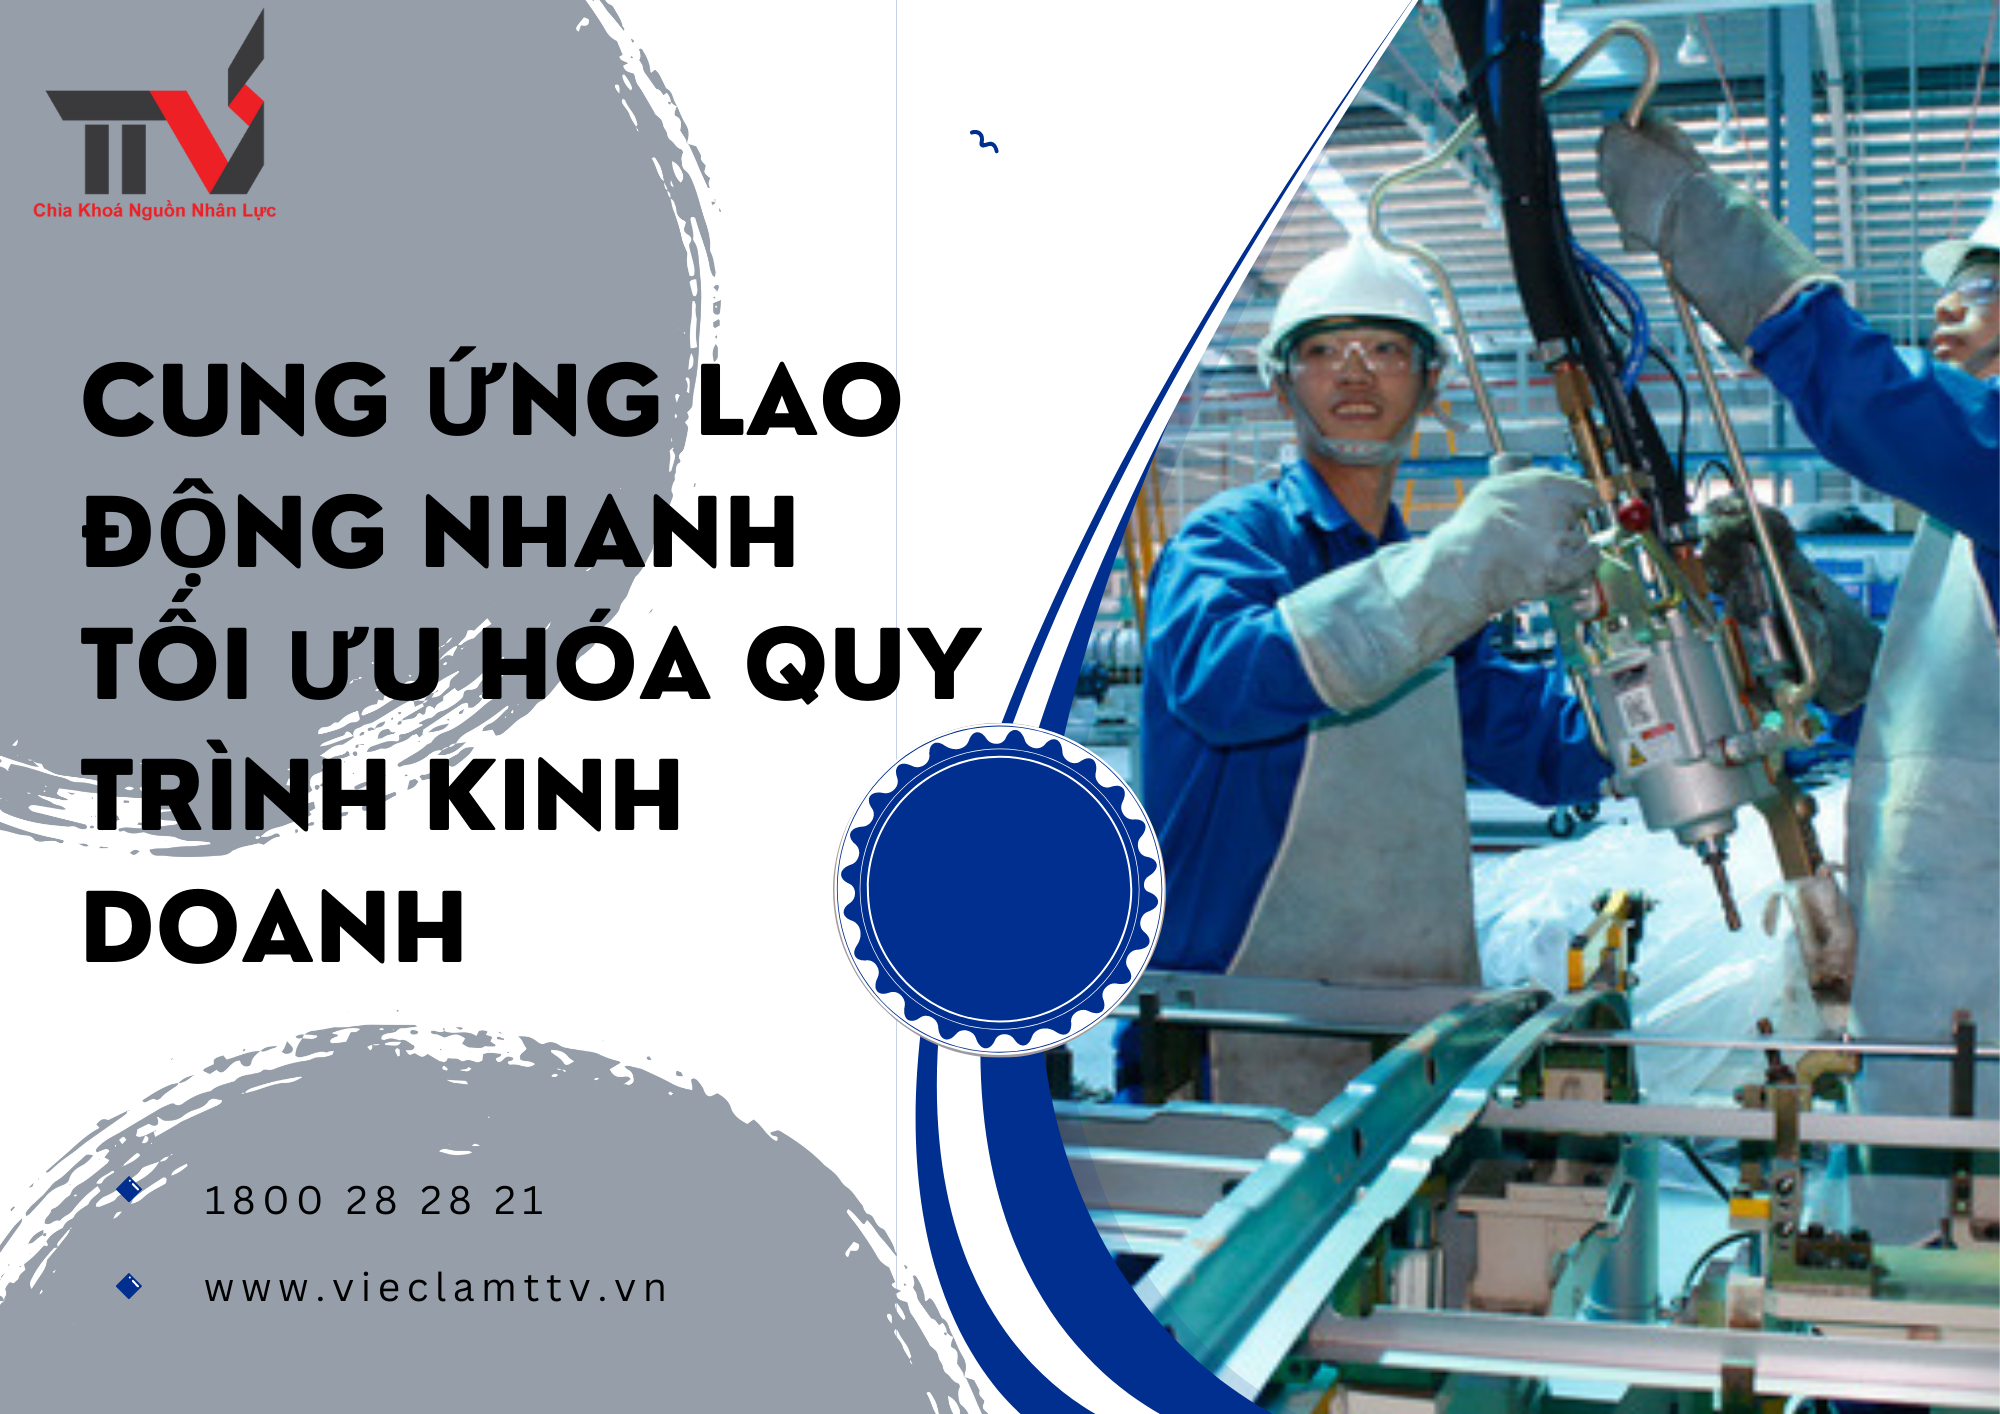 Cung ứng lao động nhanh: Tối ưu hóa quy trình kinh doanh tại khu vực Hồ Chí Minh, Bình Dương, Đồng Nai